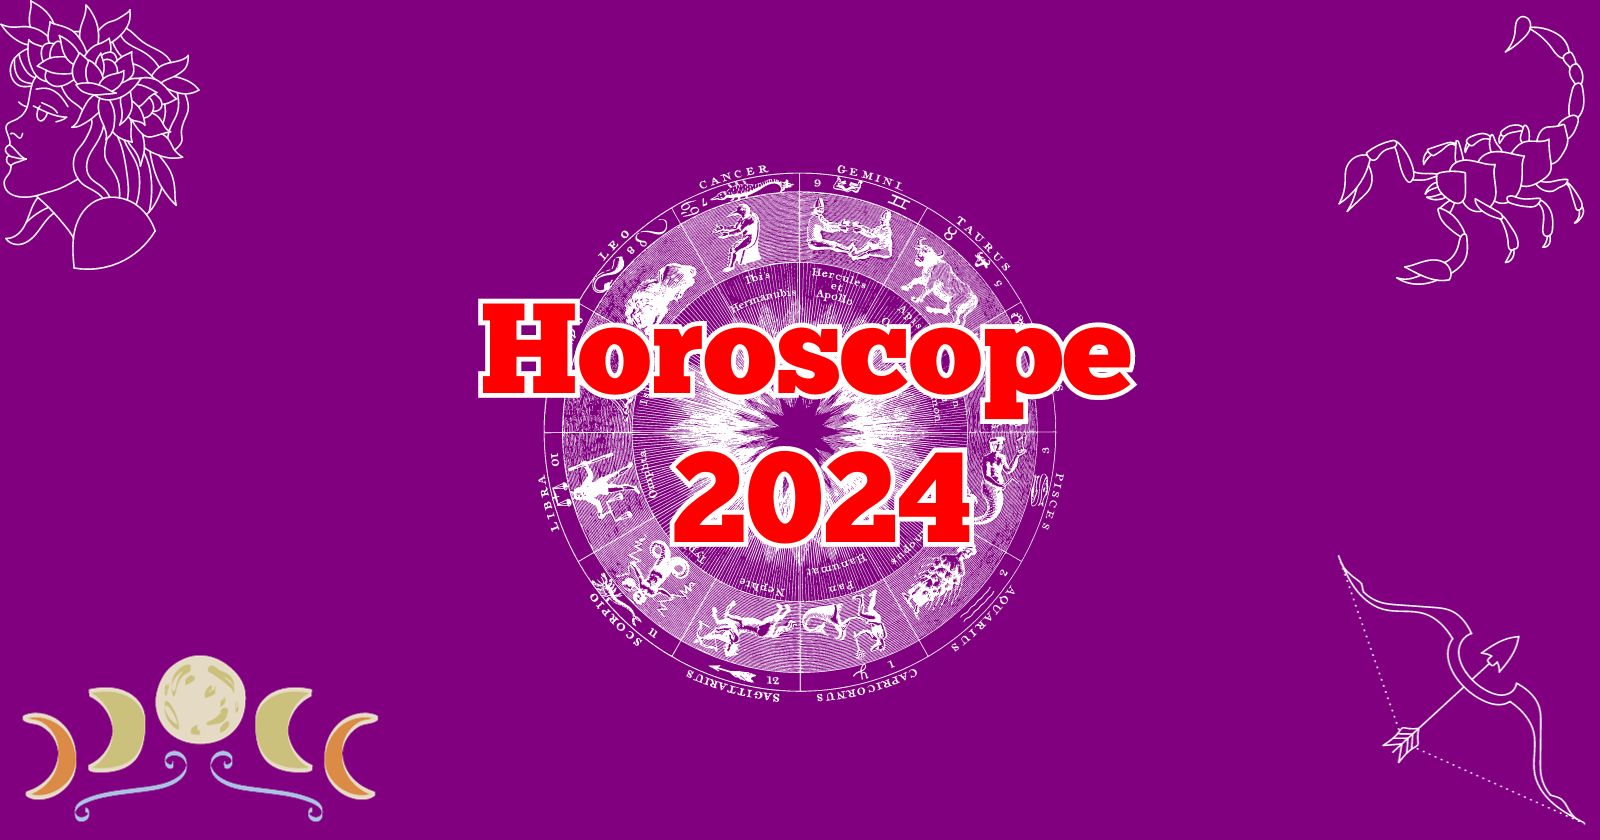 Horoscope 2024 English 